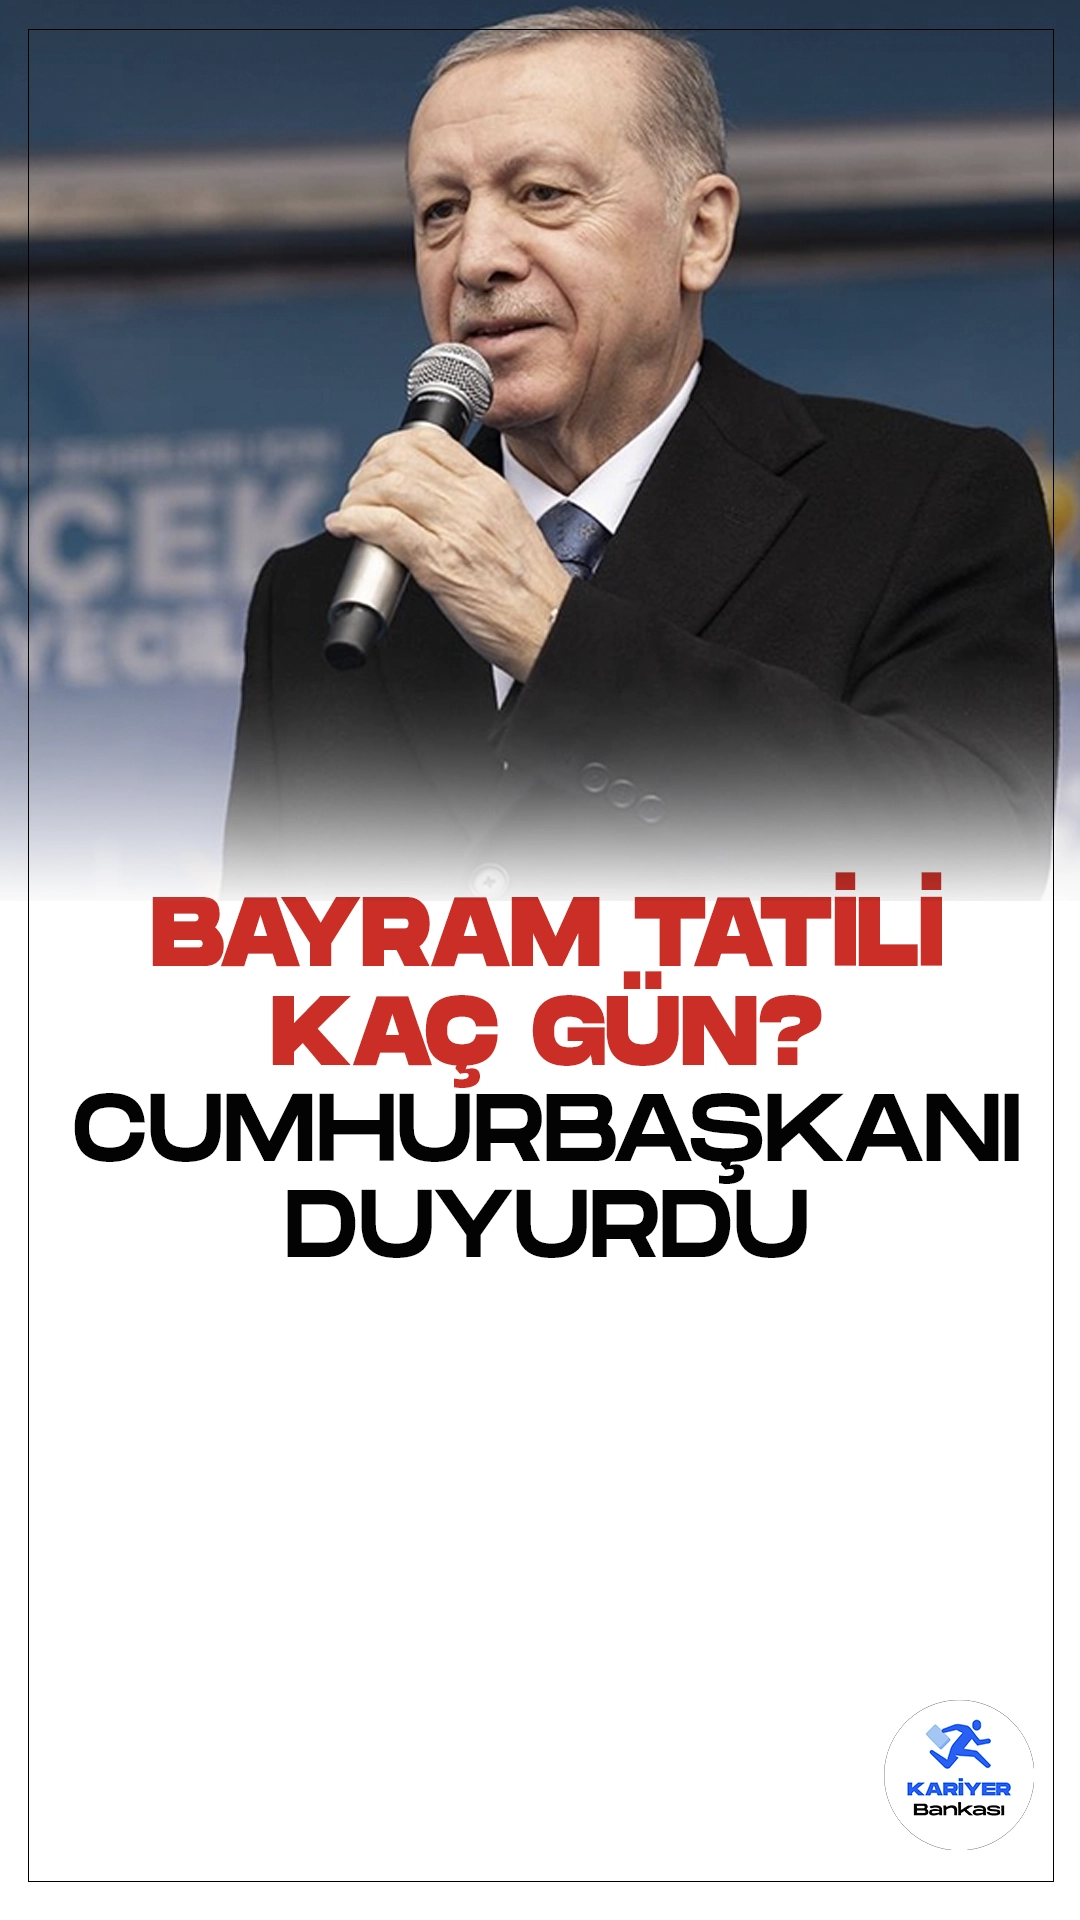 Cumhurbaşkanı Duyurdu: Ramazan Bayramı Tatili 9 Gün Oldu. Cumhurbaşkanı Erdoğan, ATO Congresium'da Şoför Esnafı ile iftar Programı’nda yaptığı konuşmada Bayram tatili hakkında açıklamalarda bulundu.